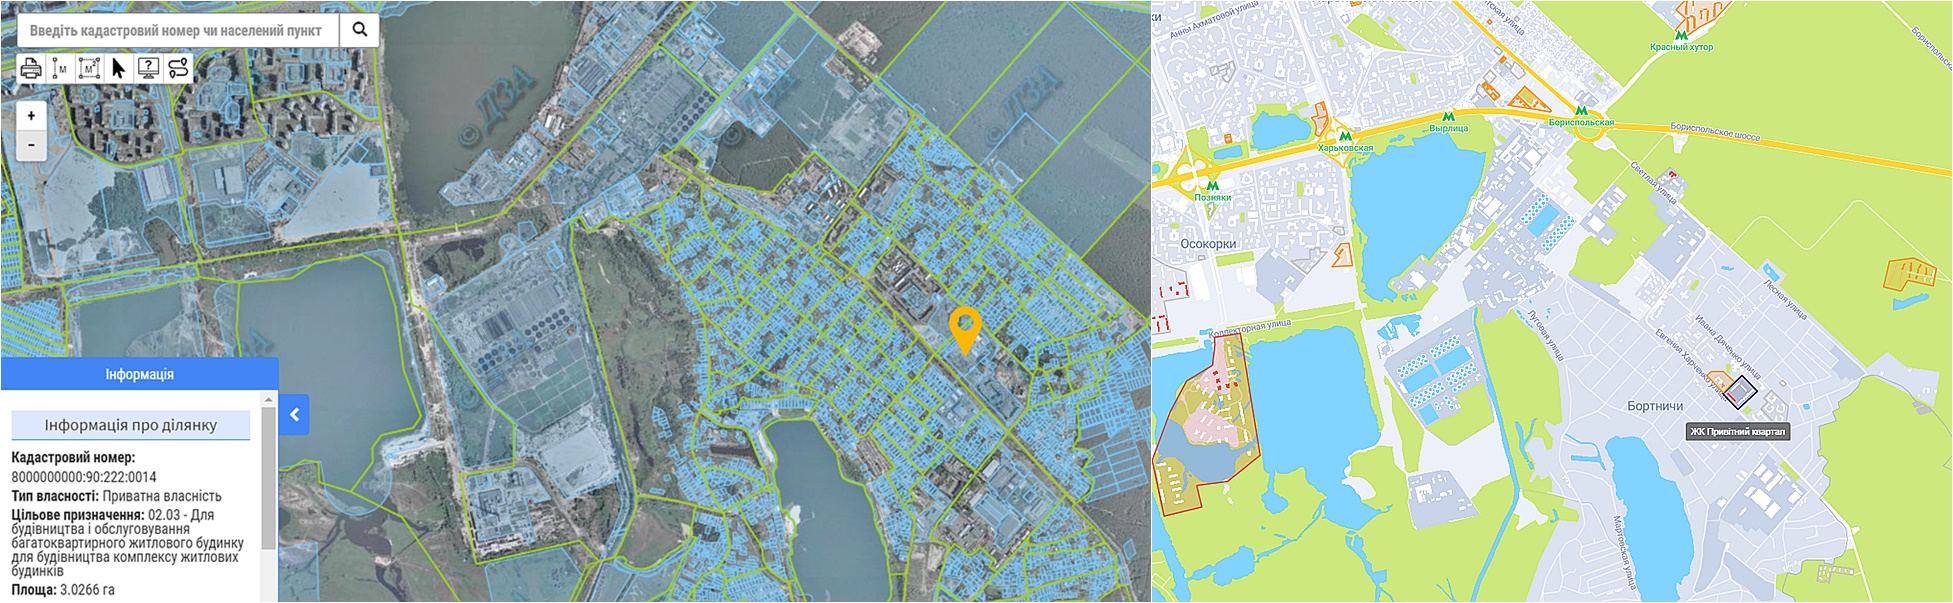 ЖК Привитный квартал новая очередь данные кадастра и на карте